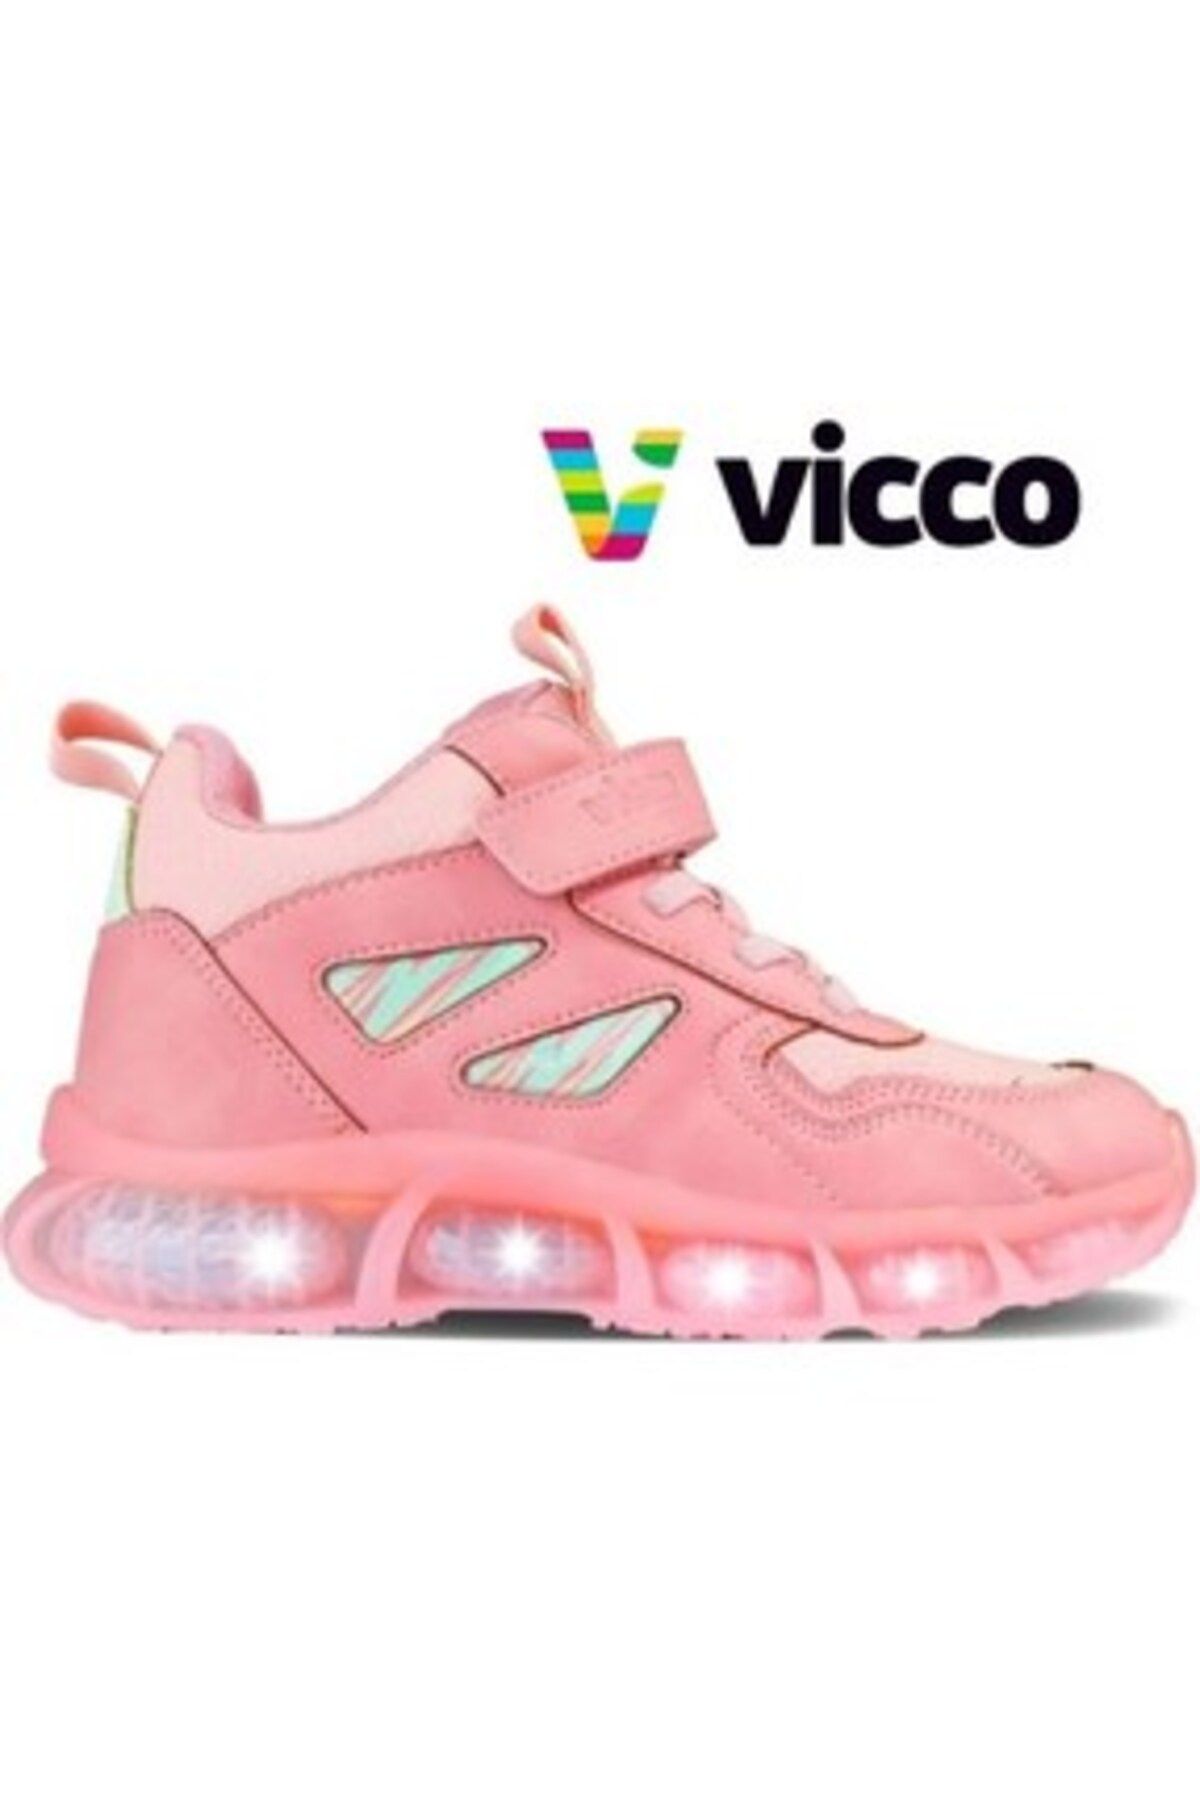 Vicco 26-35 Numara Air Ortopedik Taban Işıklı Çocuk Ayakkabı